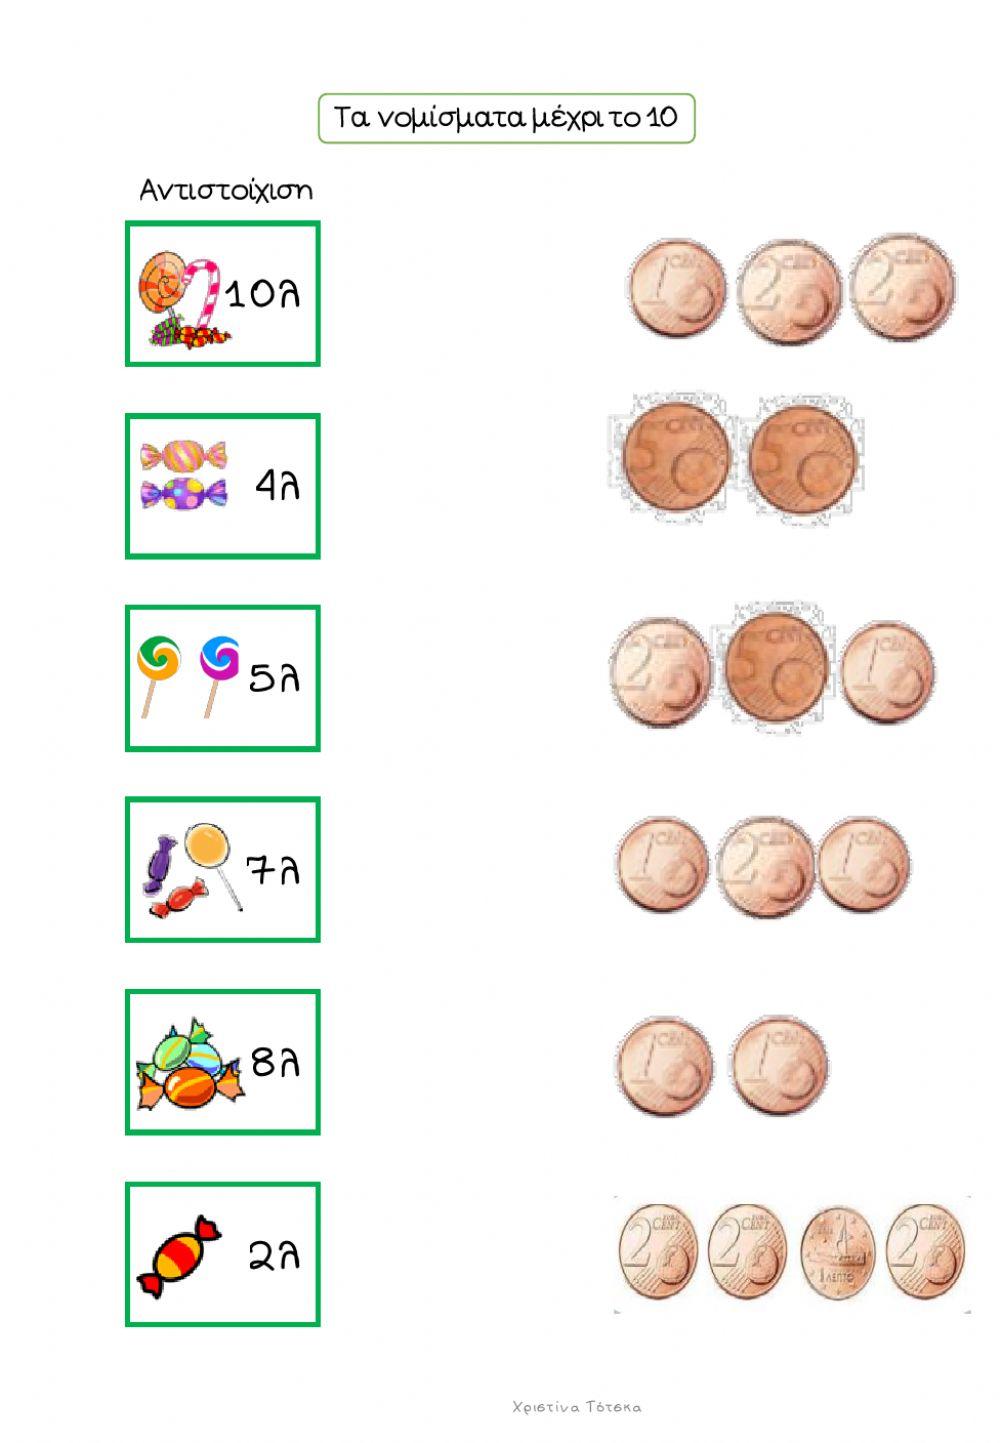 Τα νομίσματα μέχρι το 10